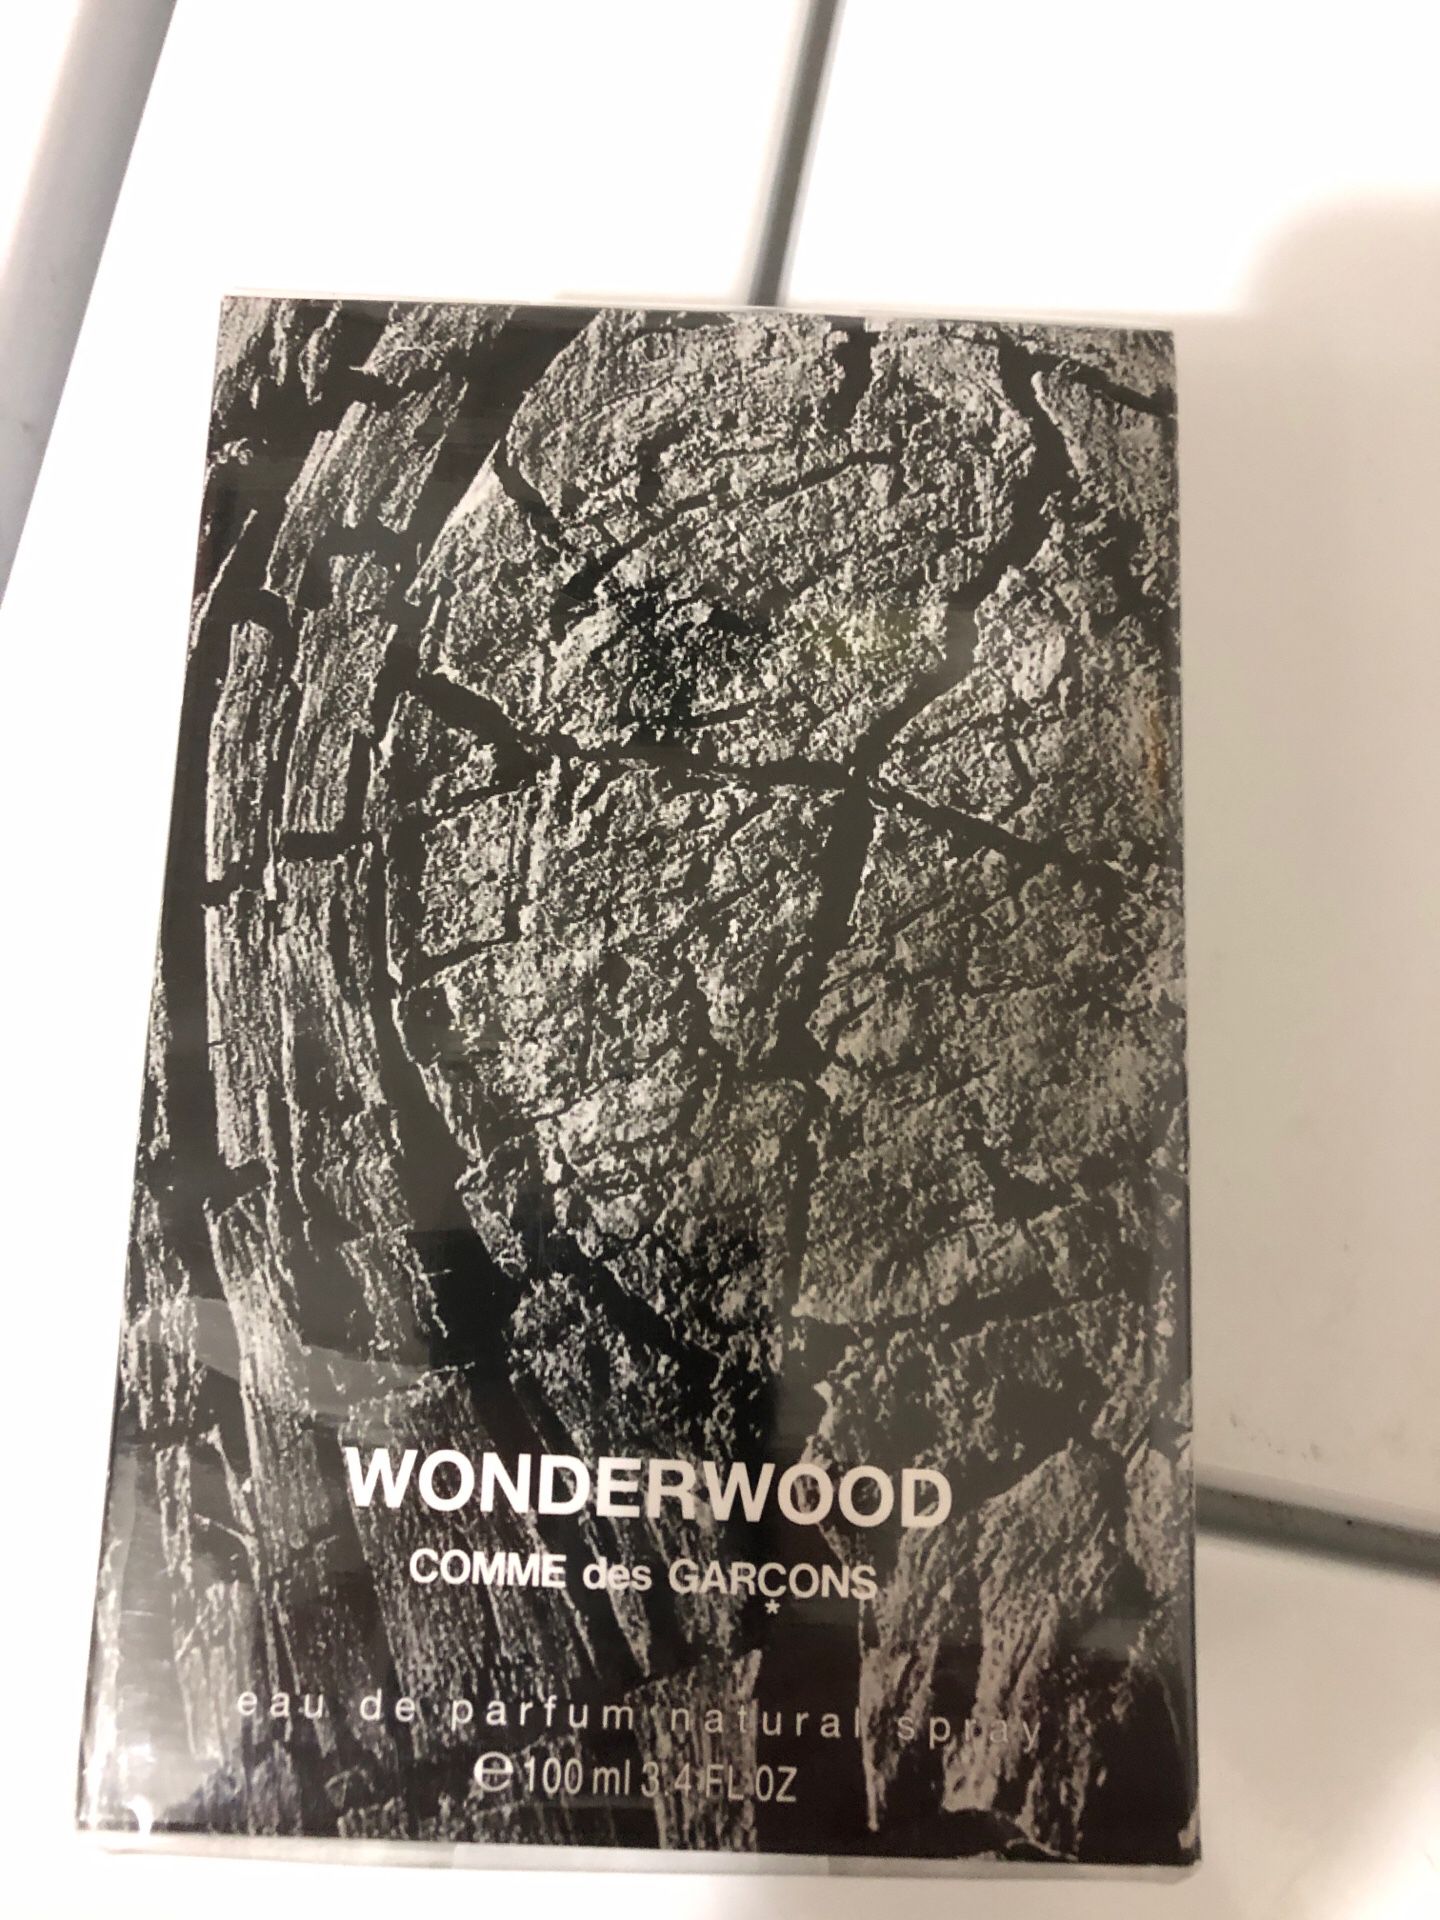 Wonderwood Comme des Garcons eau de parfum - sealed box